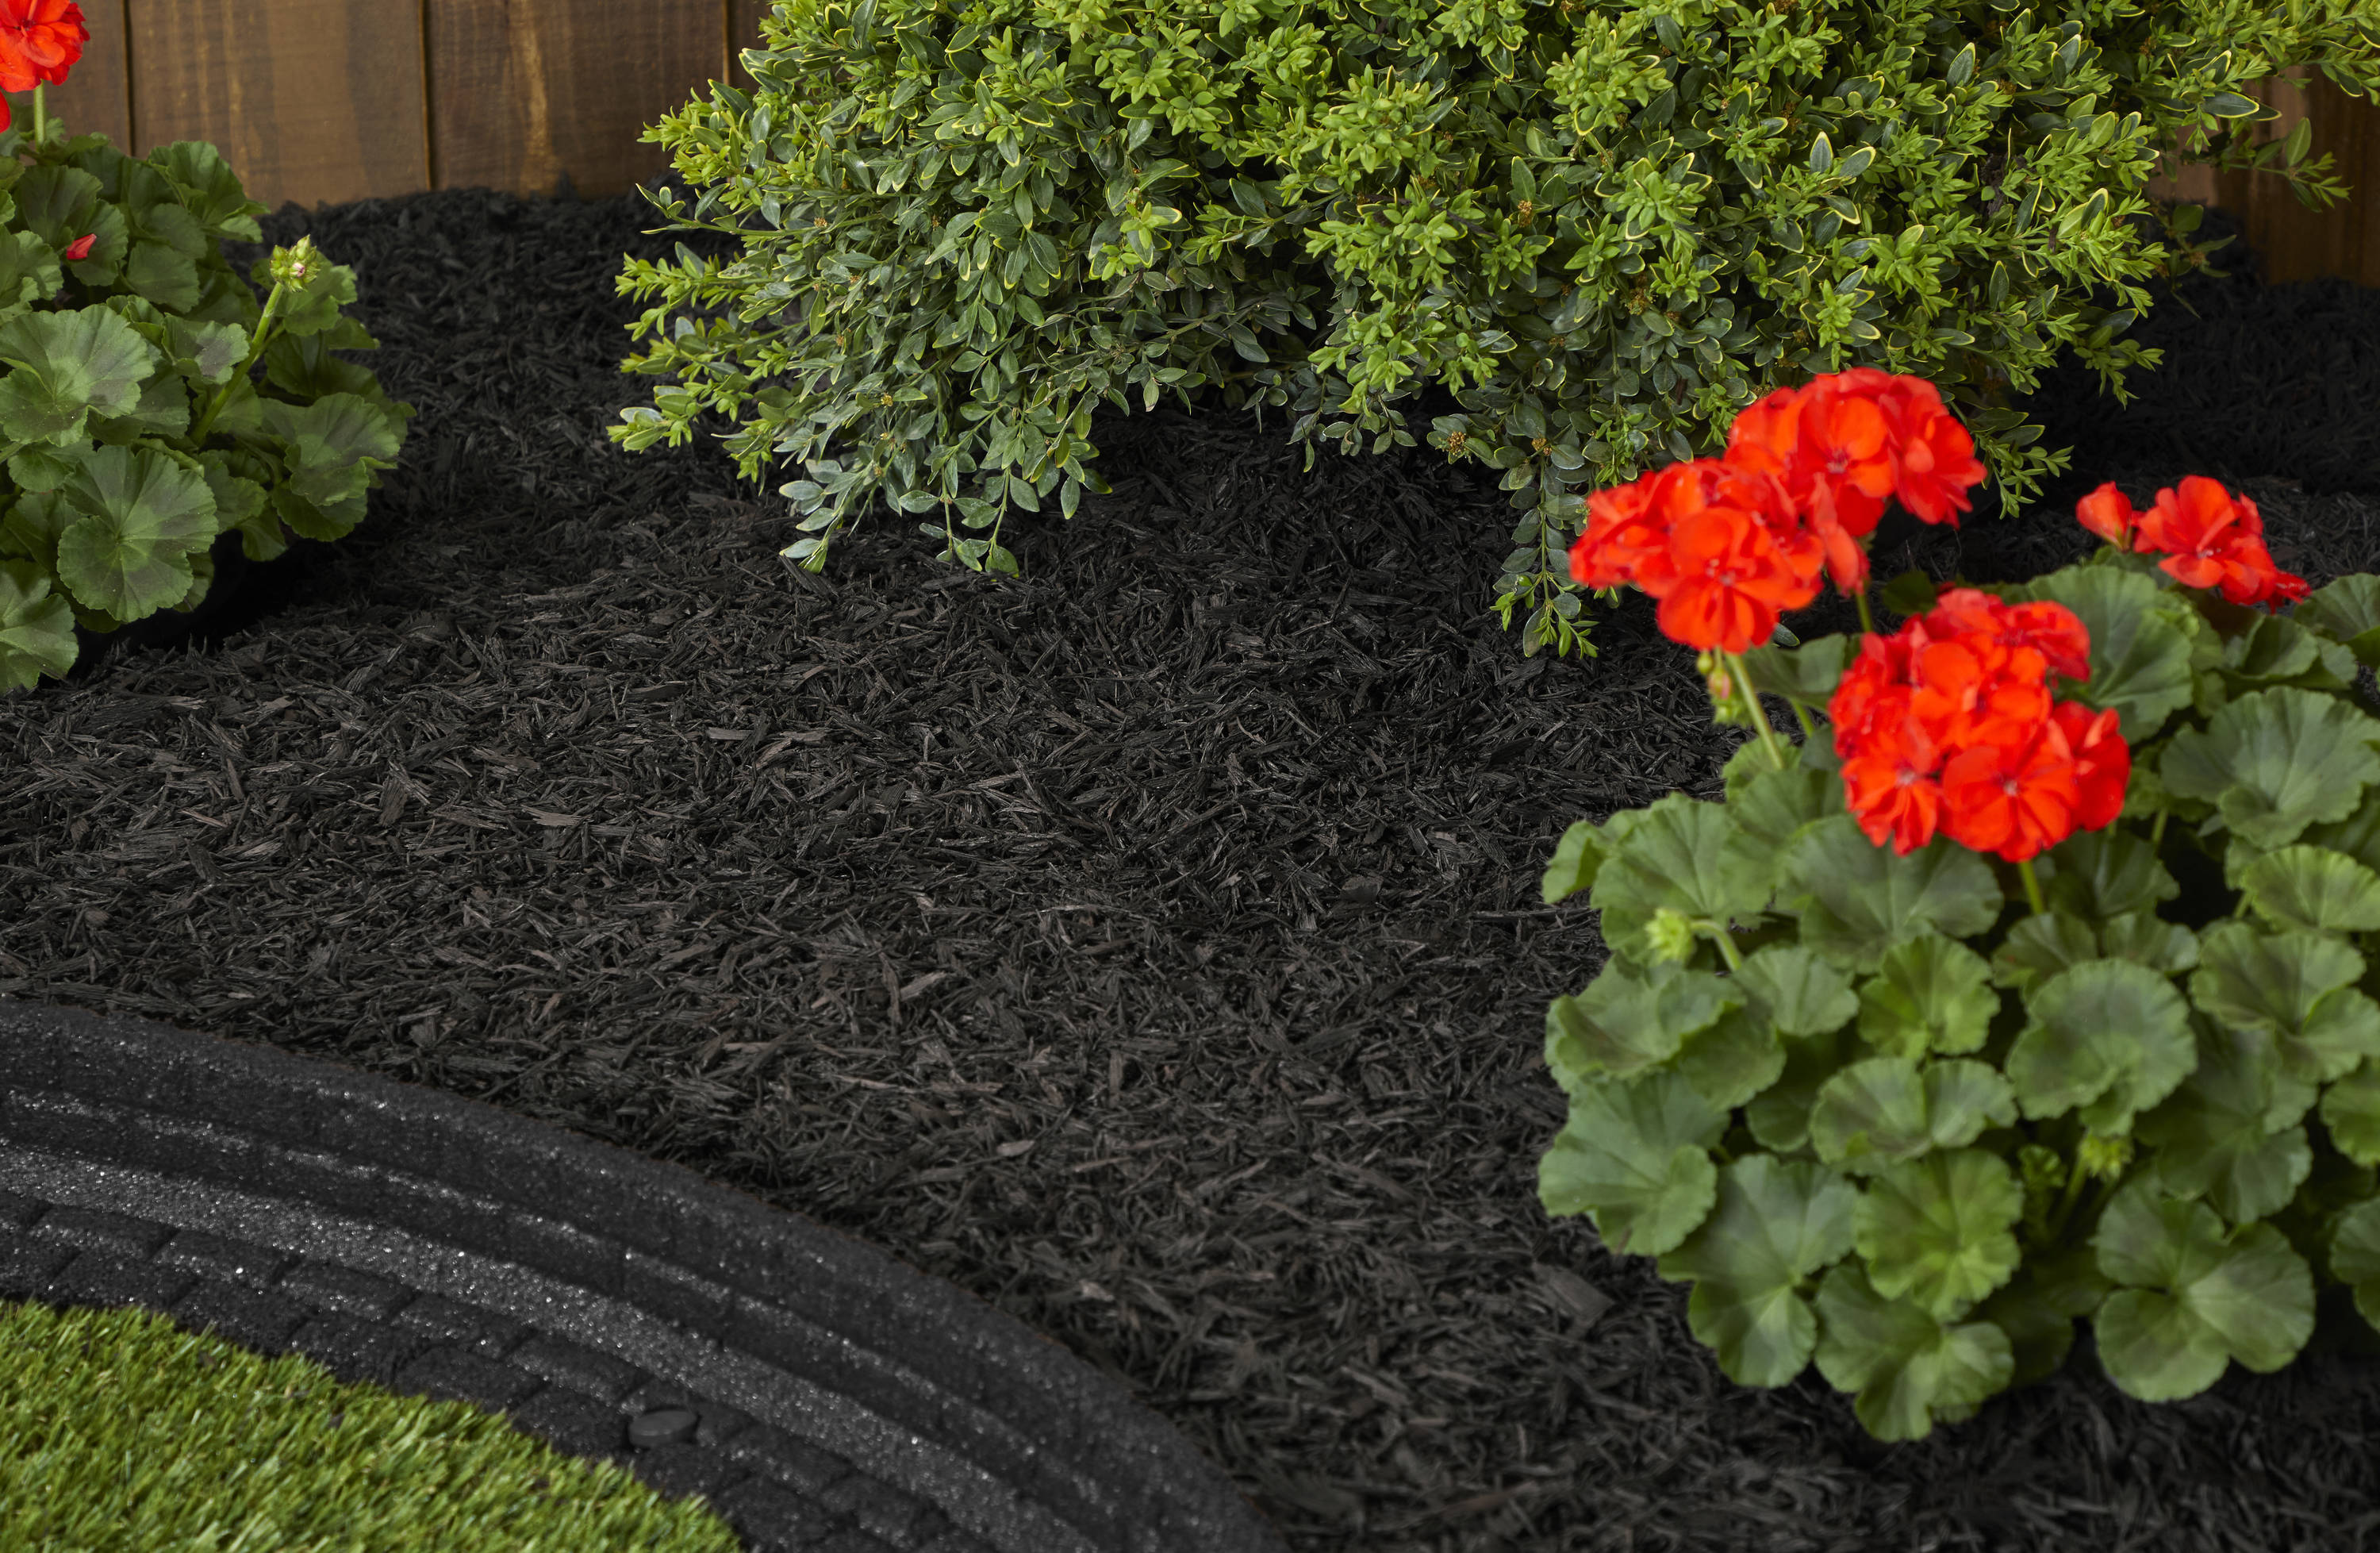 Image of Landscaper spreading black rubber mulch